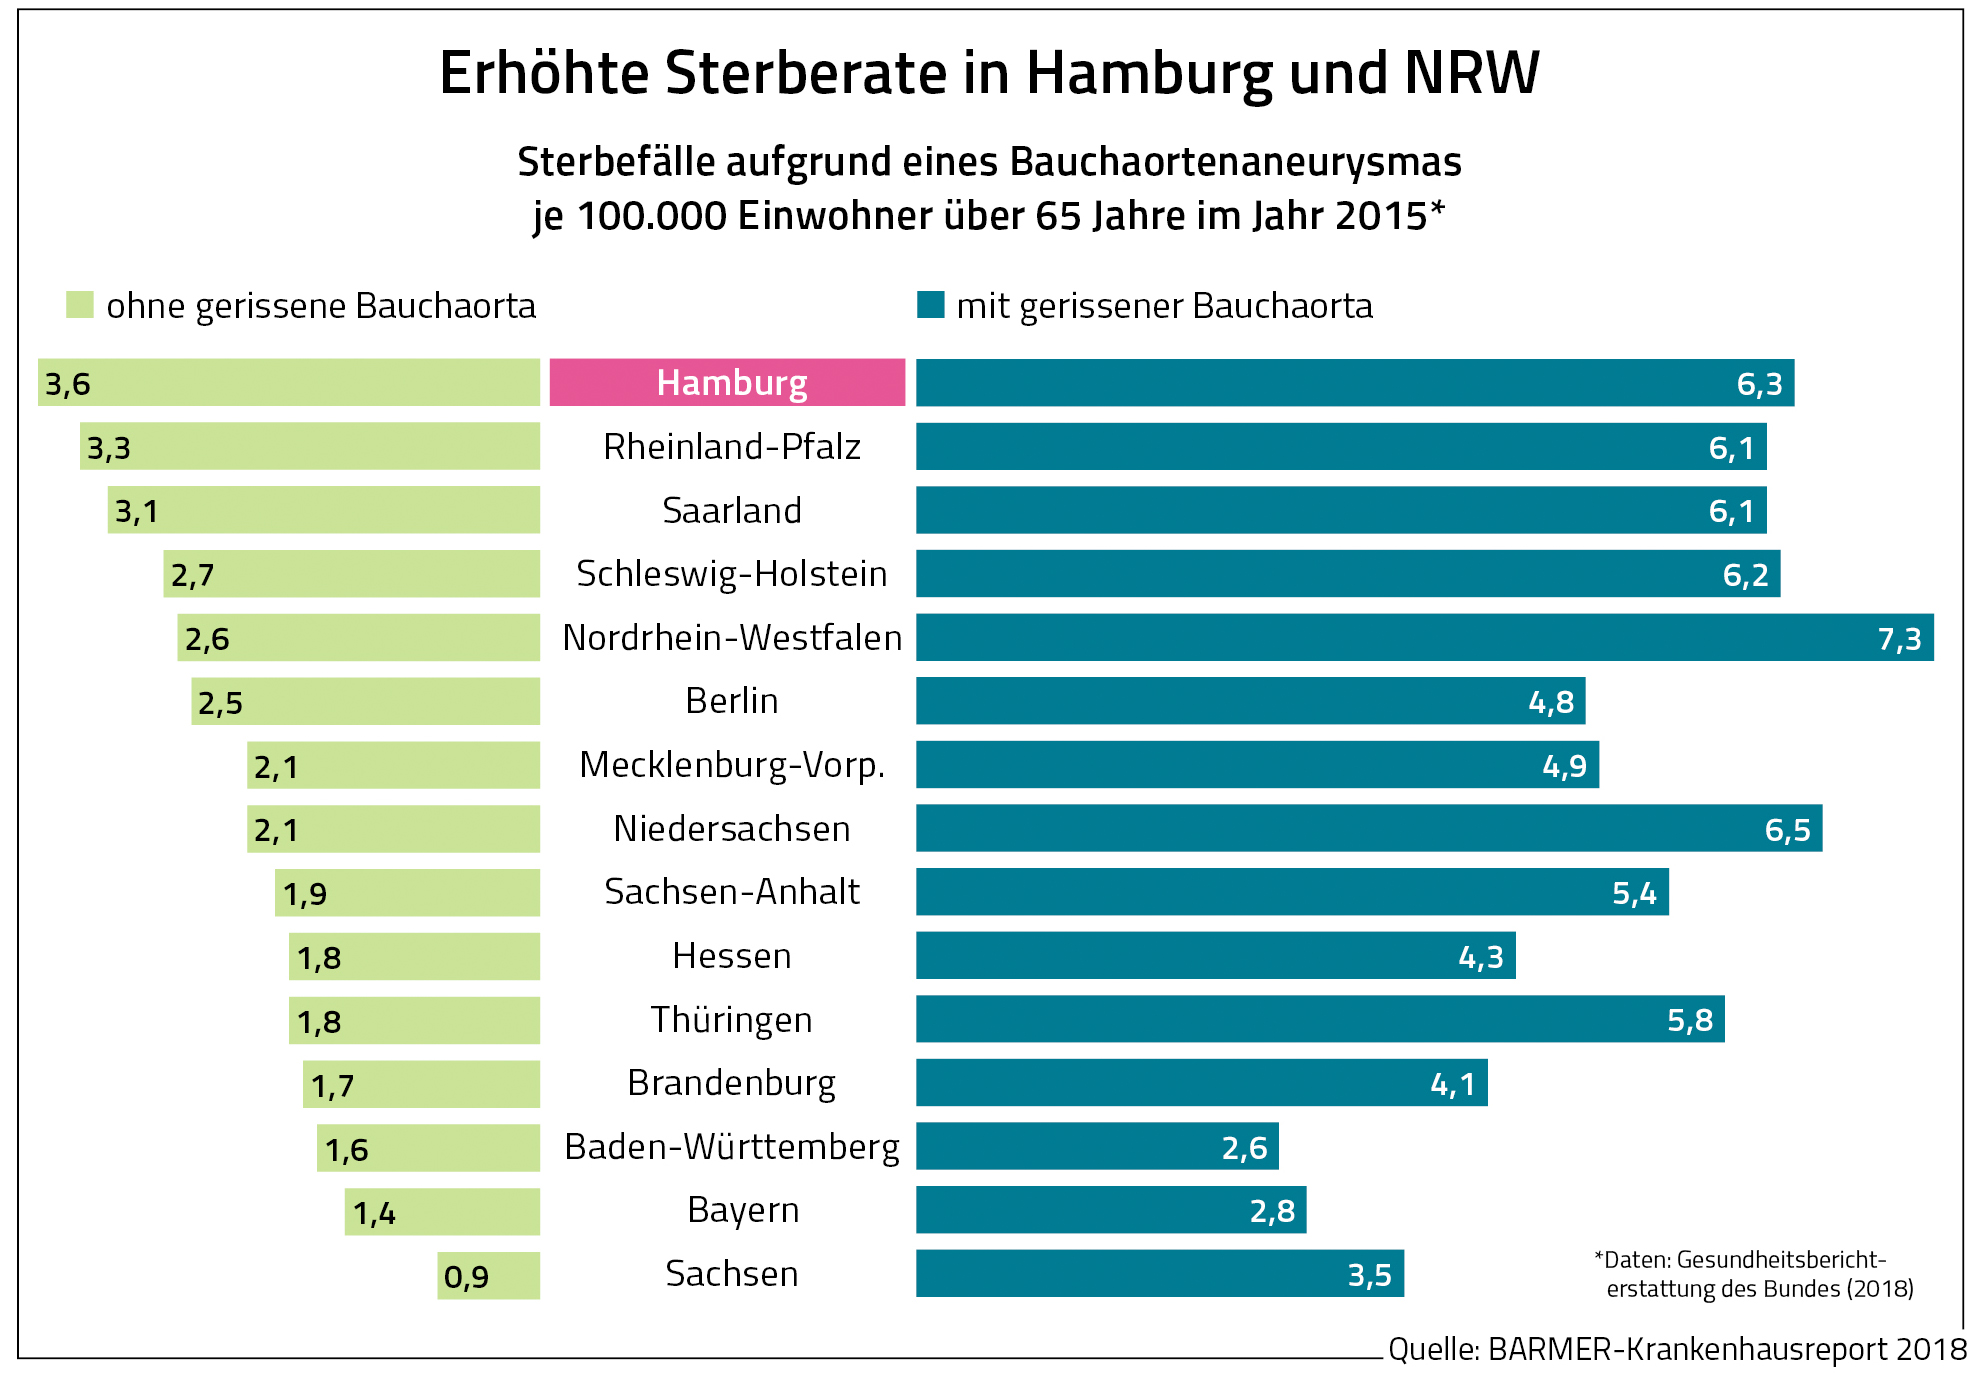 Erhöhte Sterberate in Hamburg und NRW